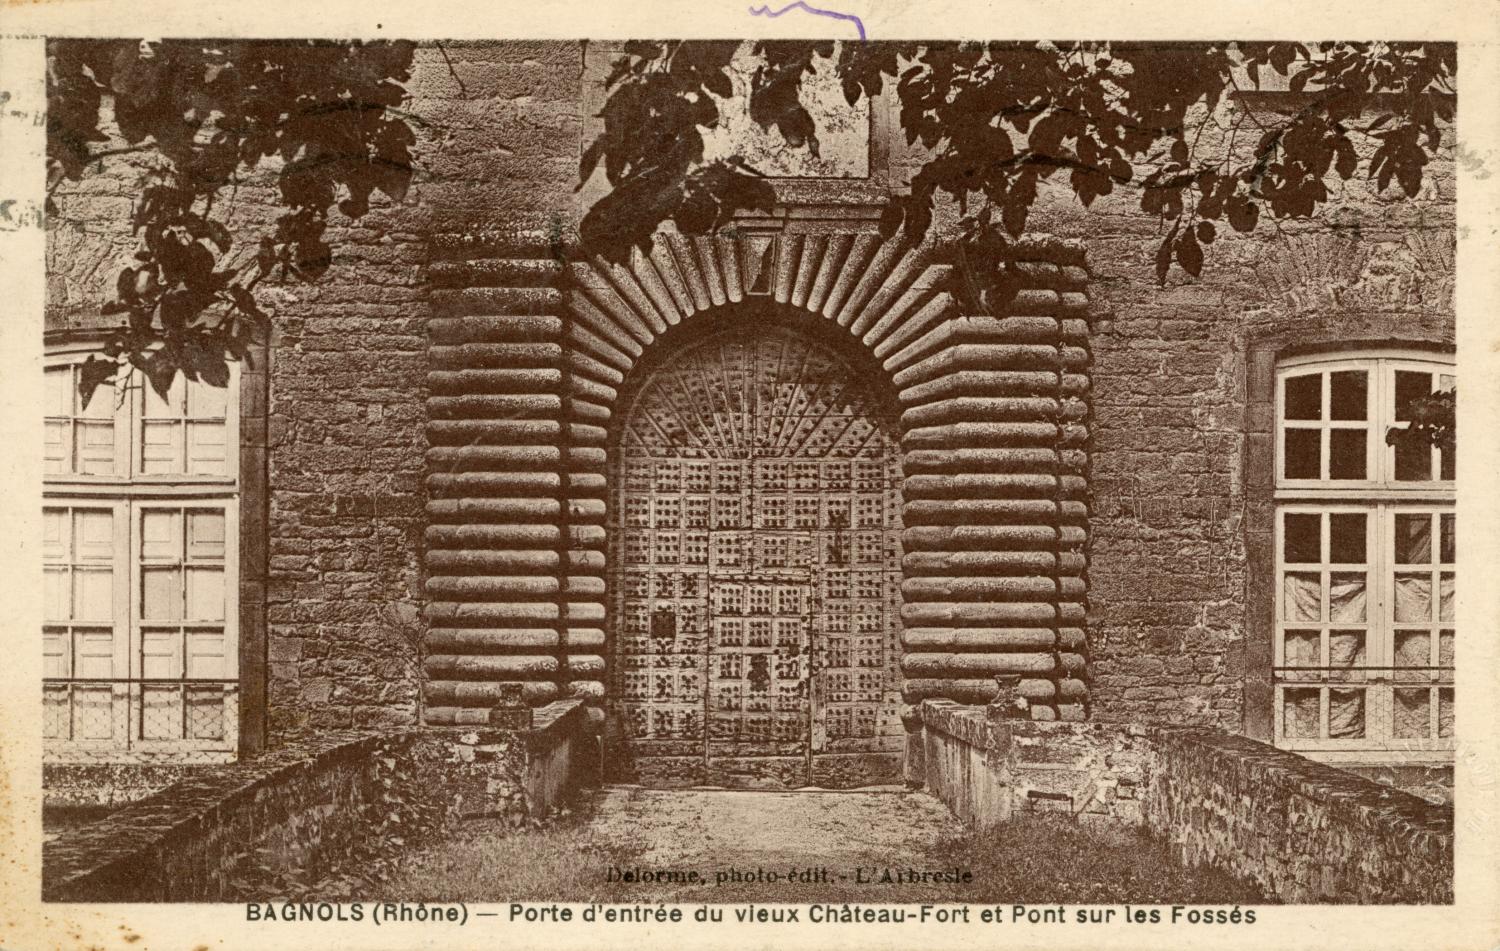 Bagnols (Rhône). - Porte d'entrée du vieux Château-Fort et Pont sur les fossés